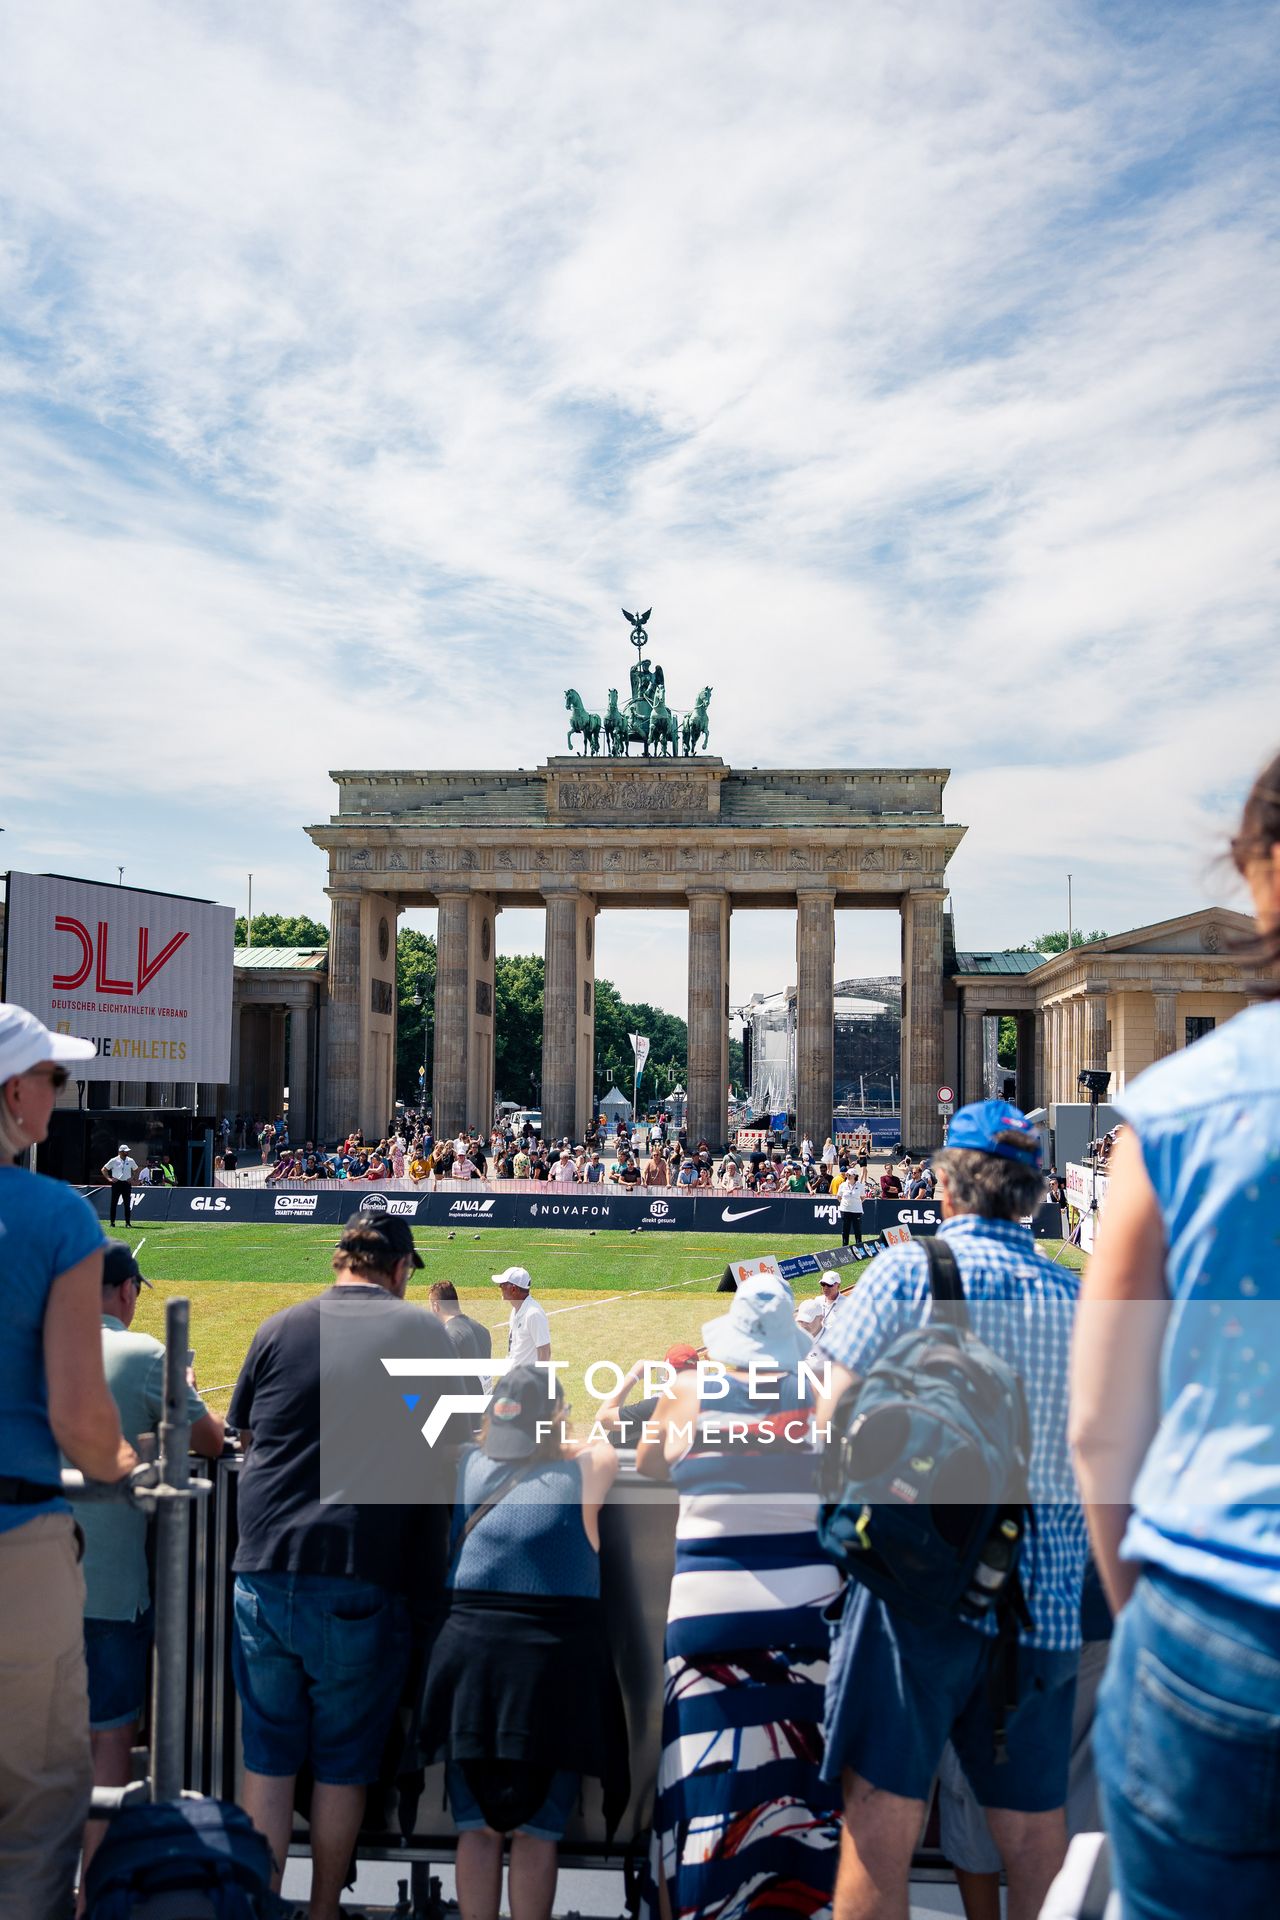 Kugelstossen vor dem Brandenburger Tor beim Kugelstossen waehrend der deutschen Leichtathletik-Meisterschaften auf dem Pariser Platz am 24.06.2022 in Berlin